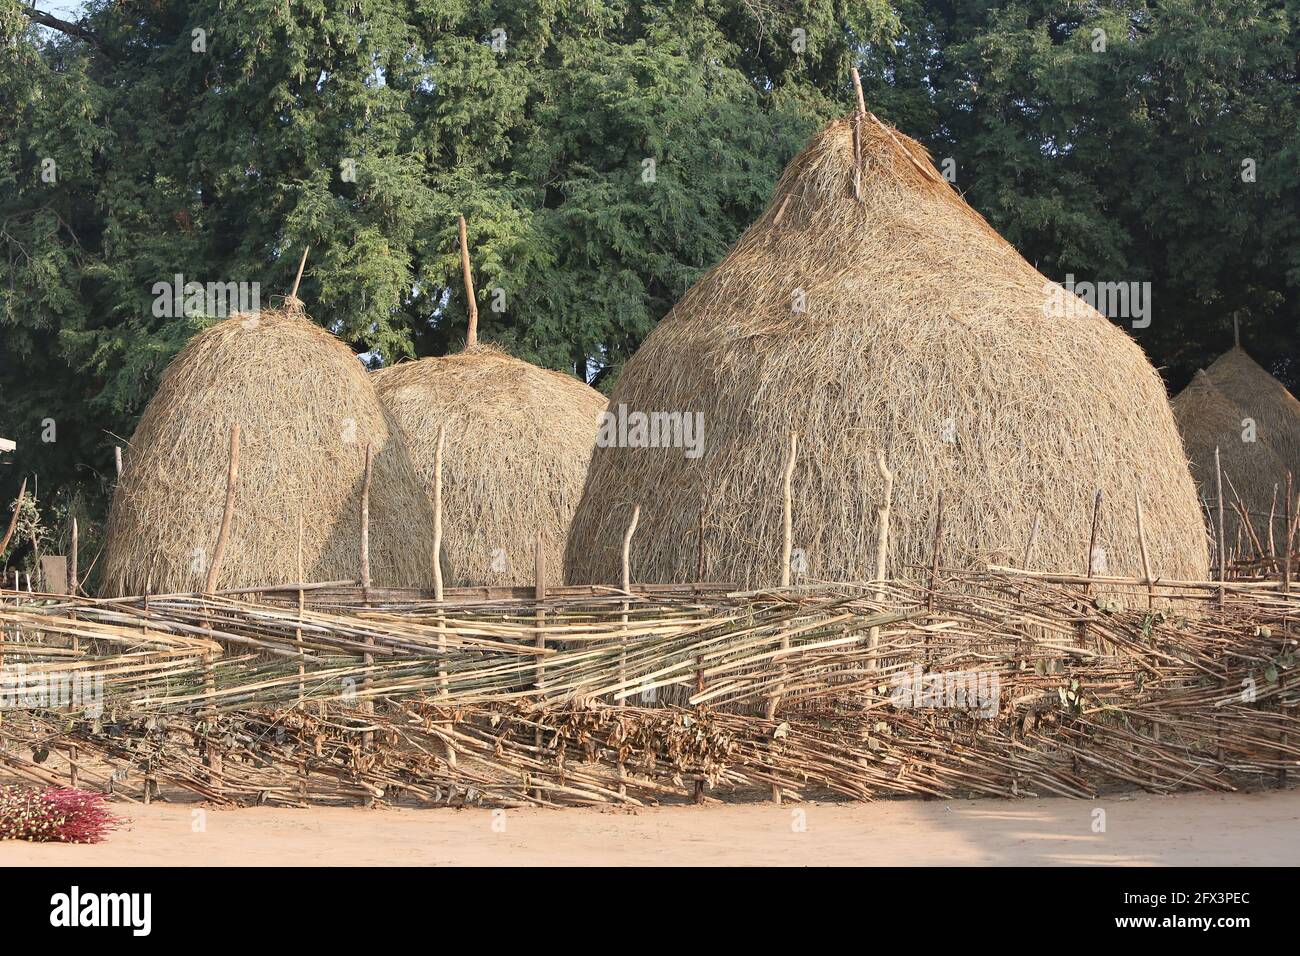 LANJIA SAORA TRIBE - Collection de paddy sec ou de foin pour les animaux. Village tribal de Puttasingh, Odisha, Inde Banque D'Images